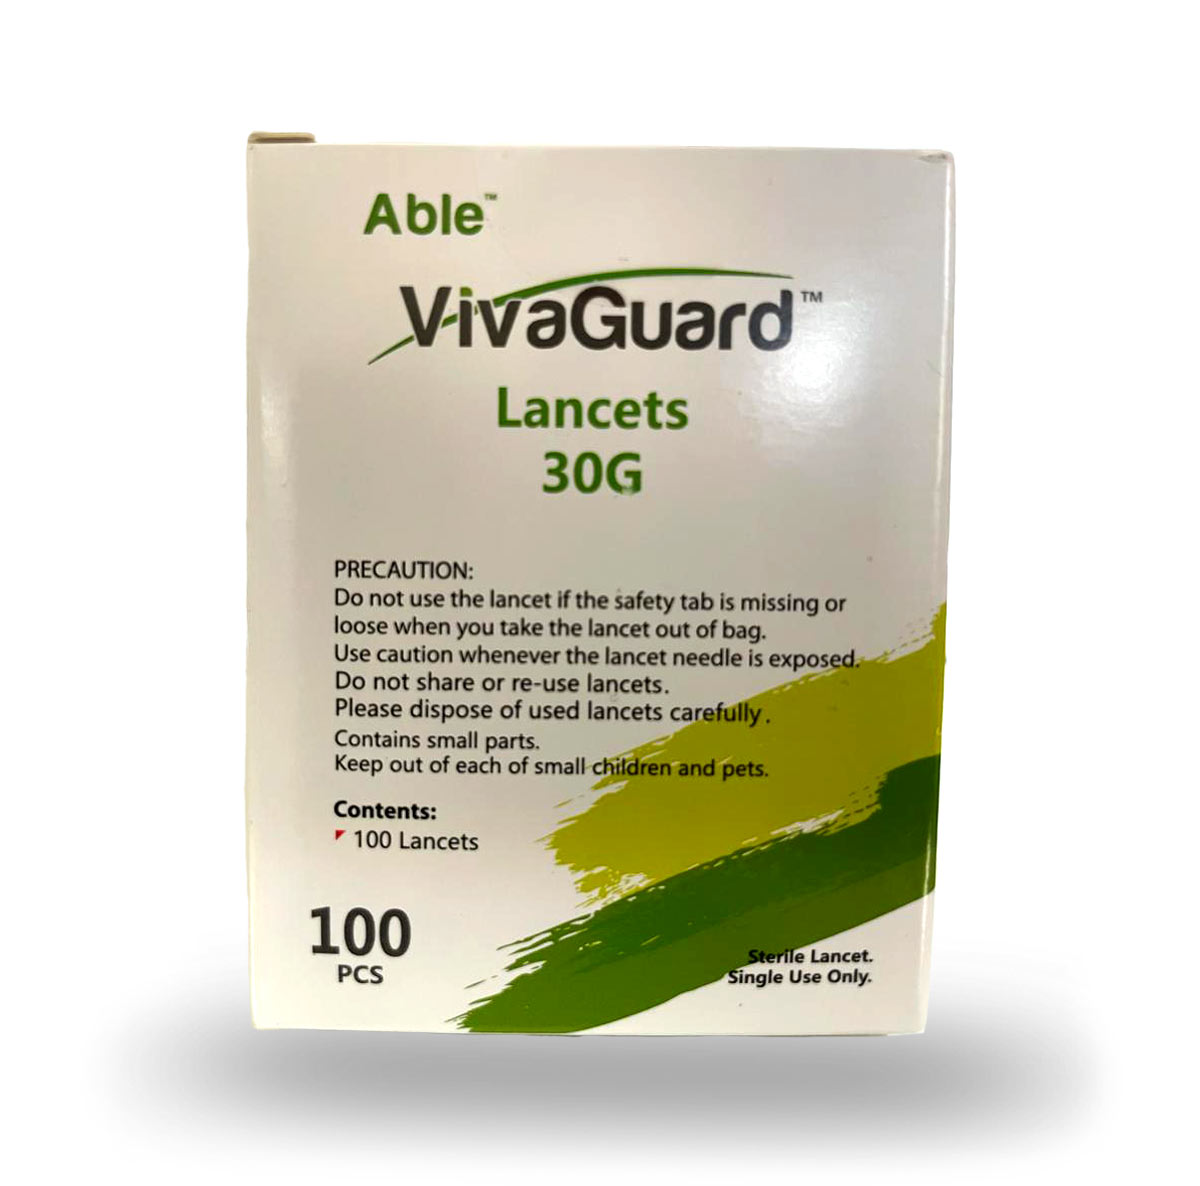 VivaGuard Lancets 30G